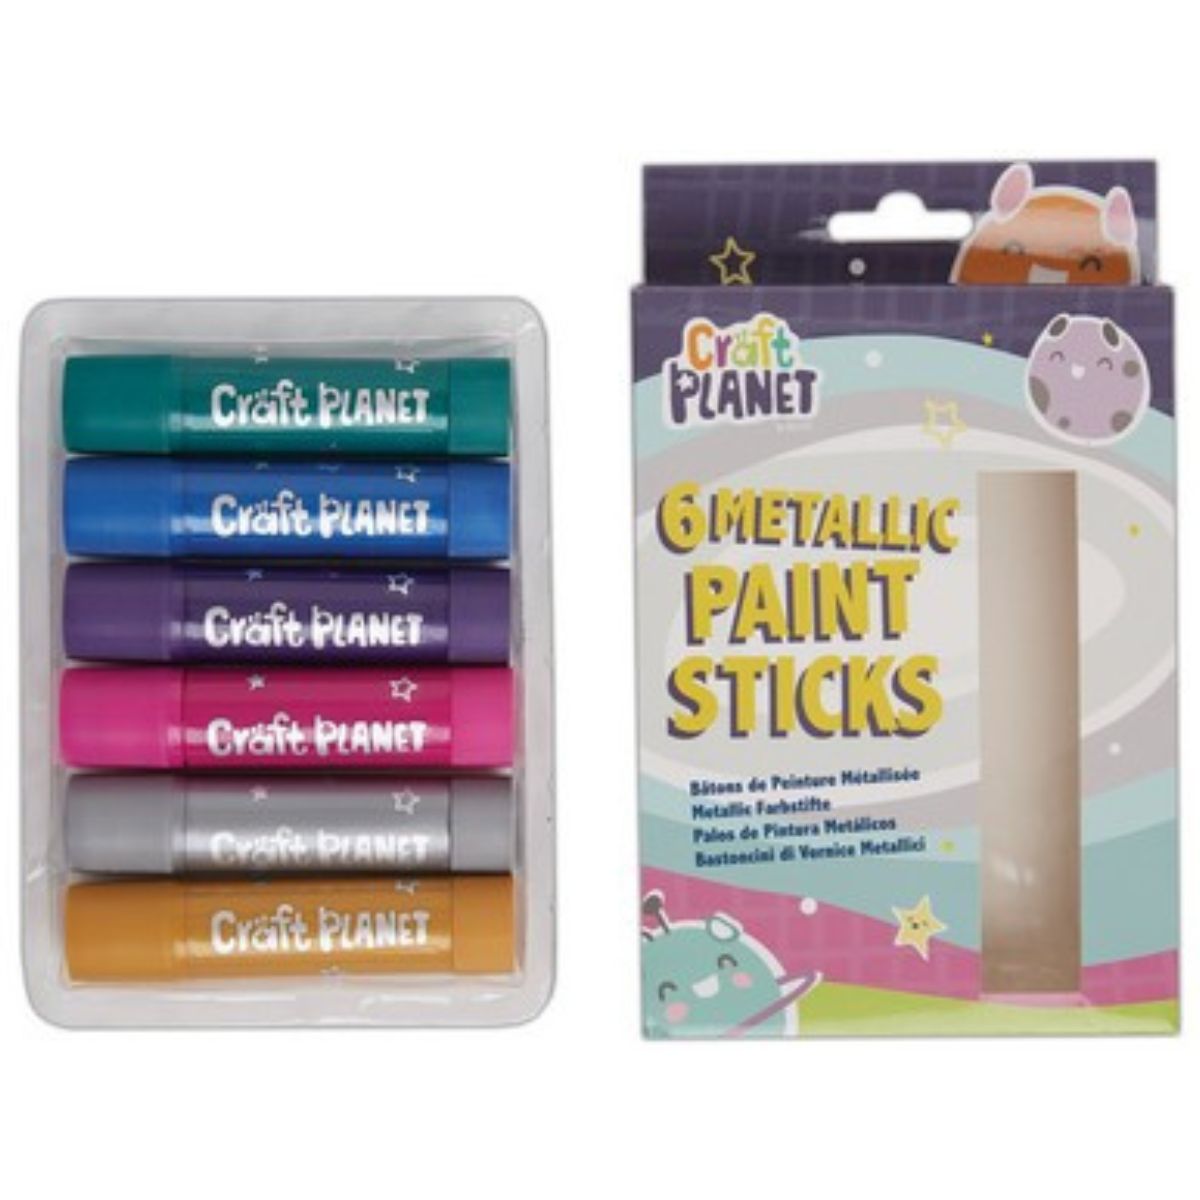 6 Paint Sticks, Metallic